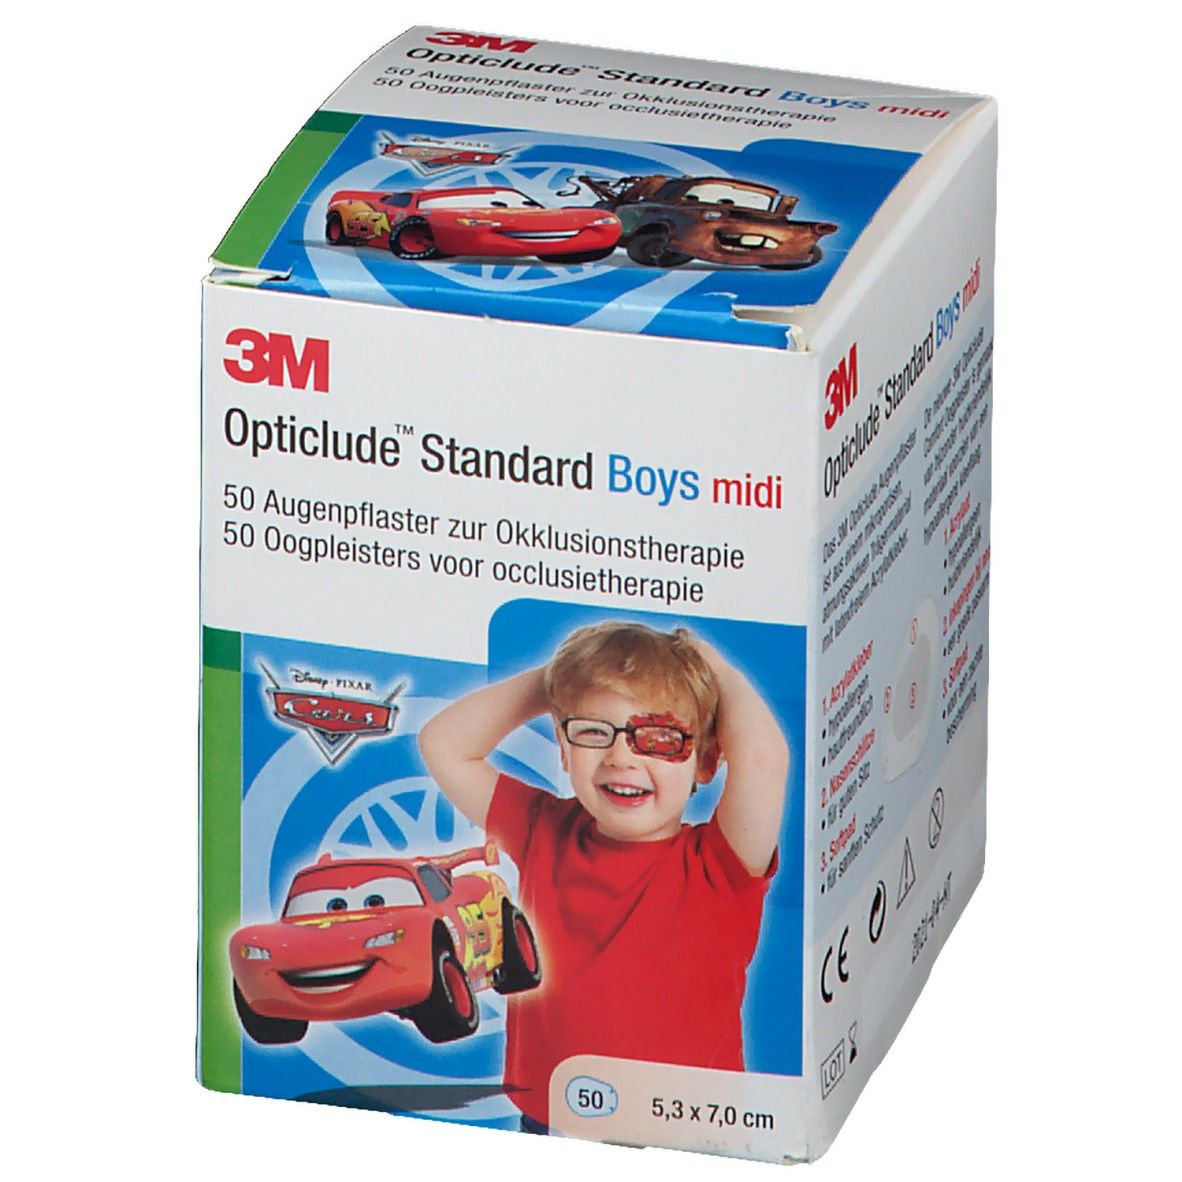 3M Opticlude Augenpflaster Disney Cars Midi